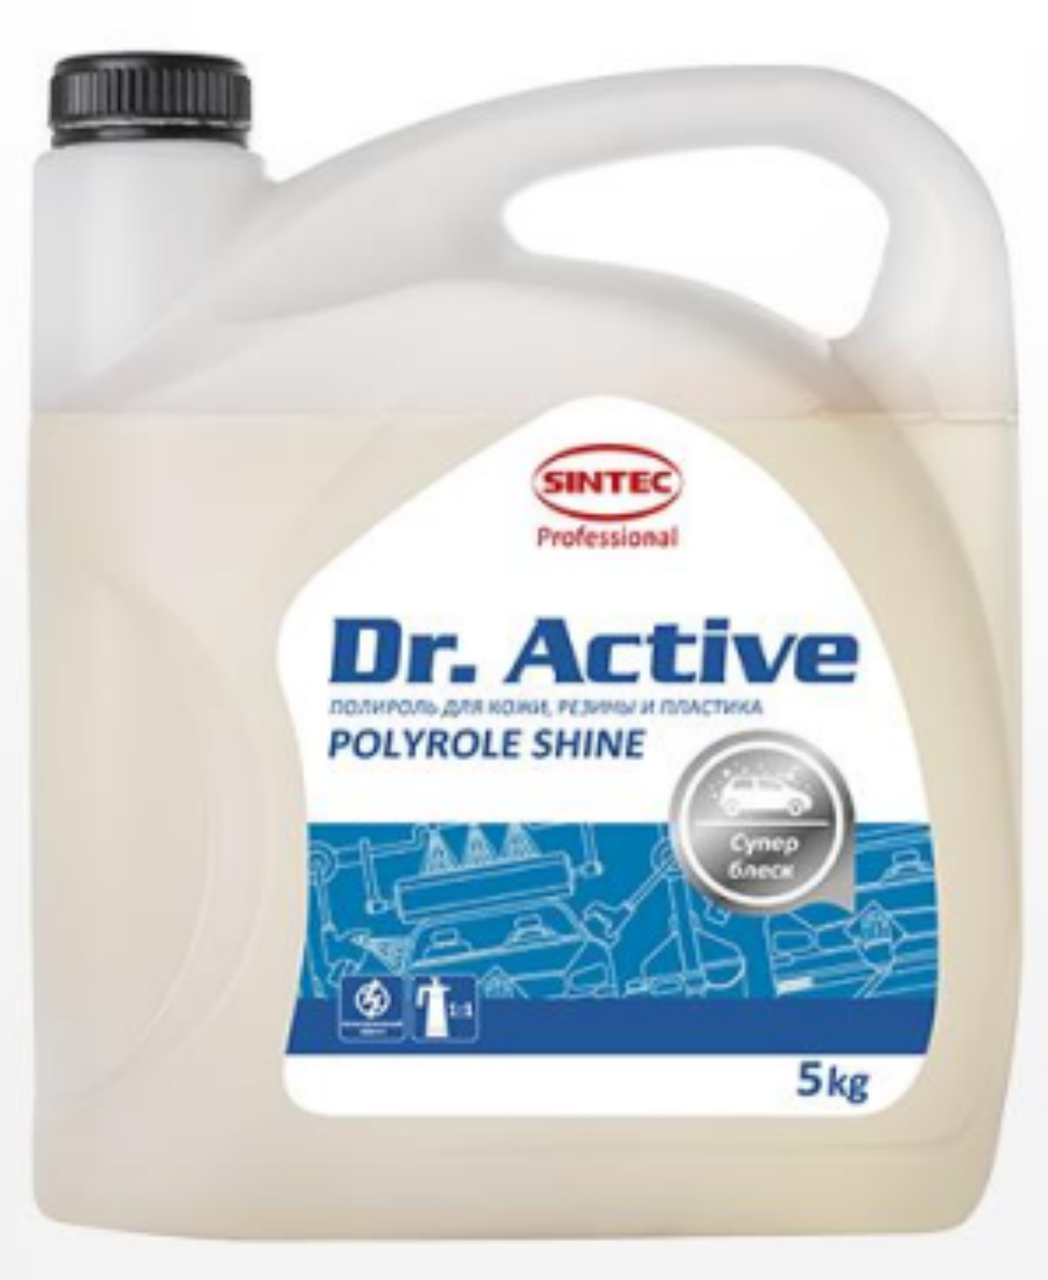 Полироль для кожи, резины, пластика (глянцевый), 5кг, Sintec Dr. Active «Polyrole Shine»